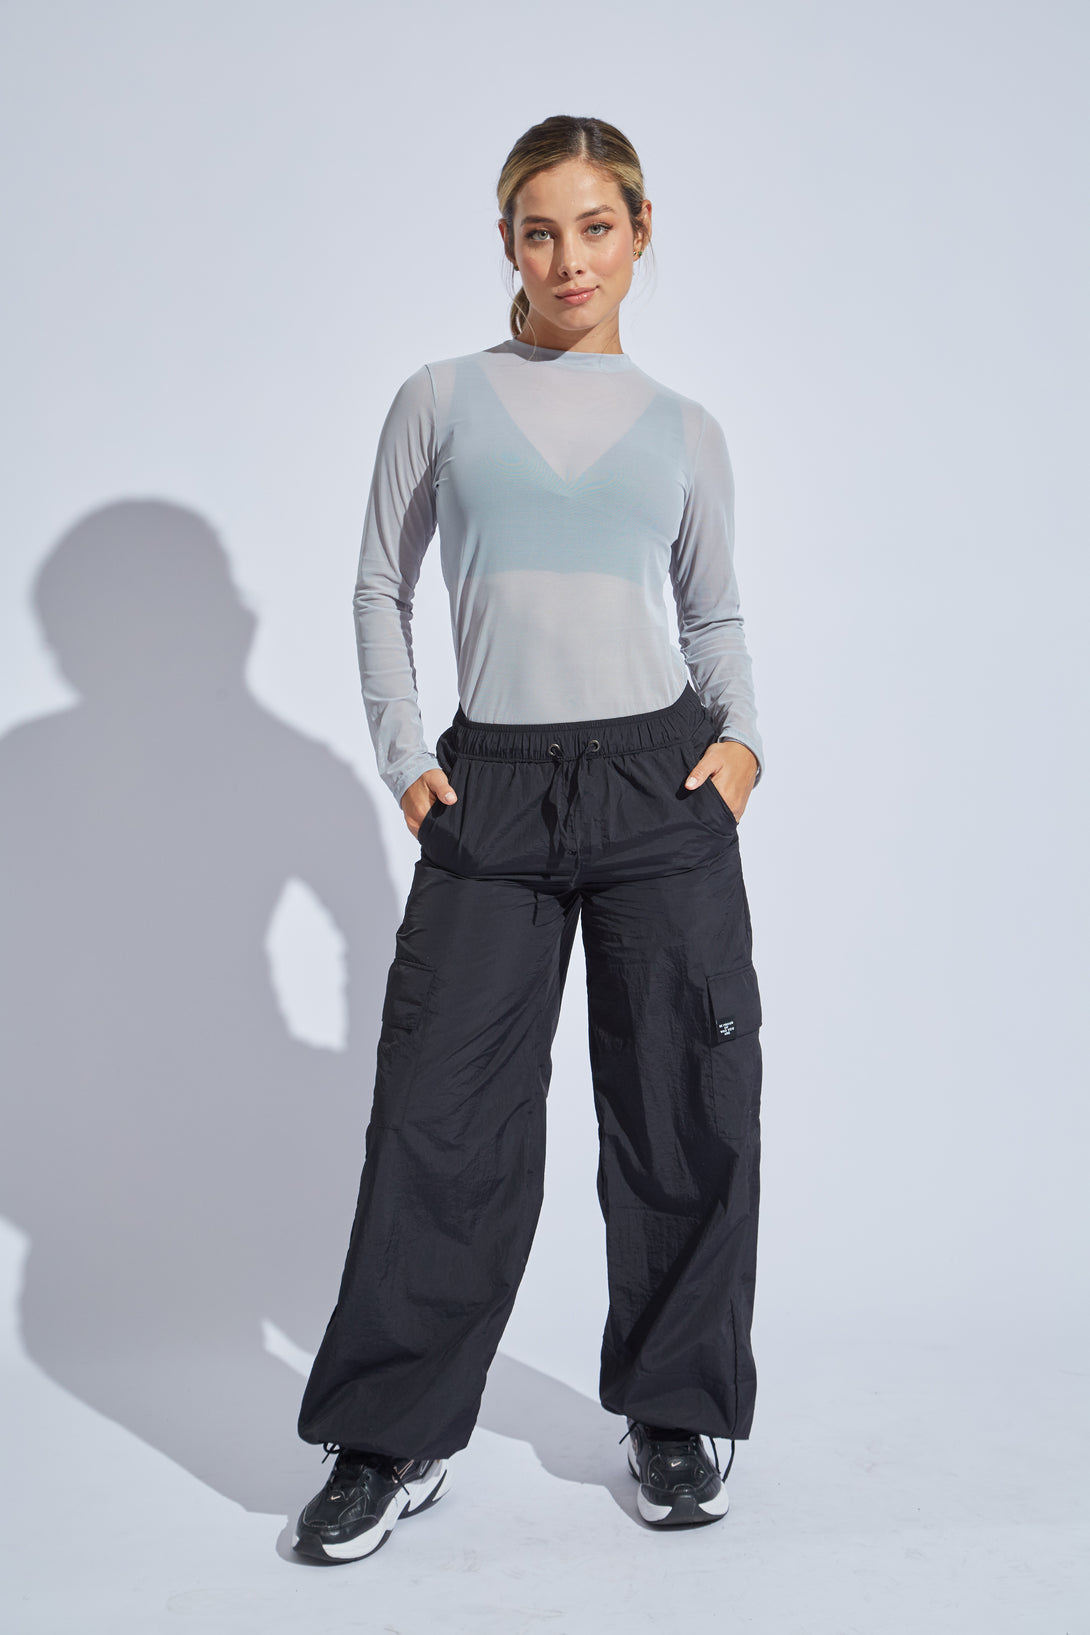 pantalon-jogger-mujer